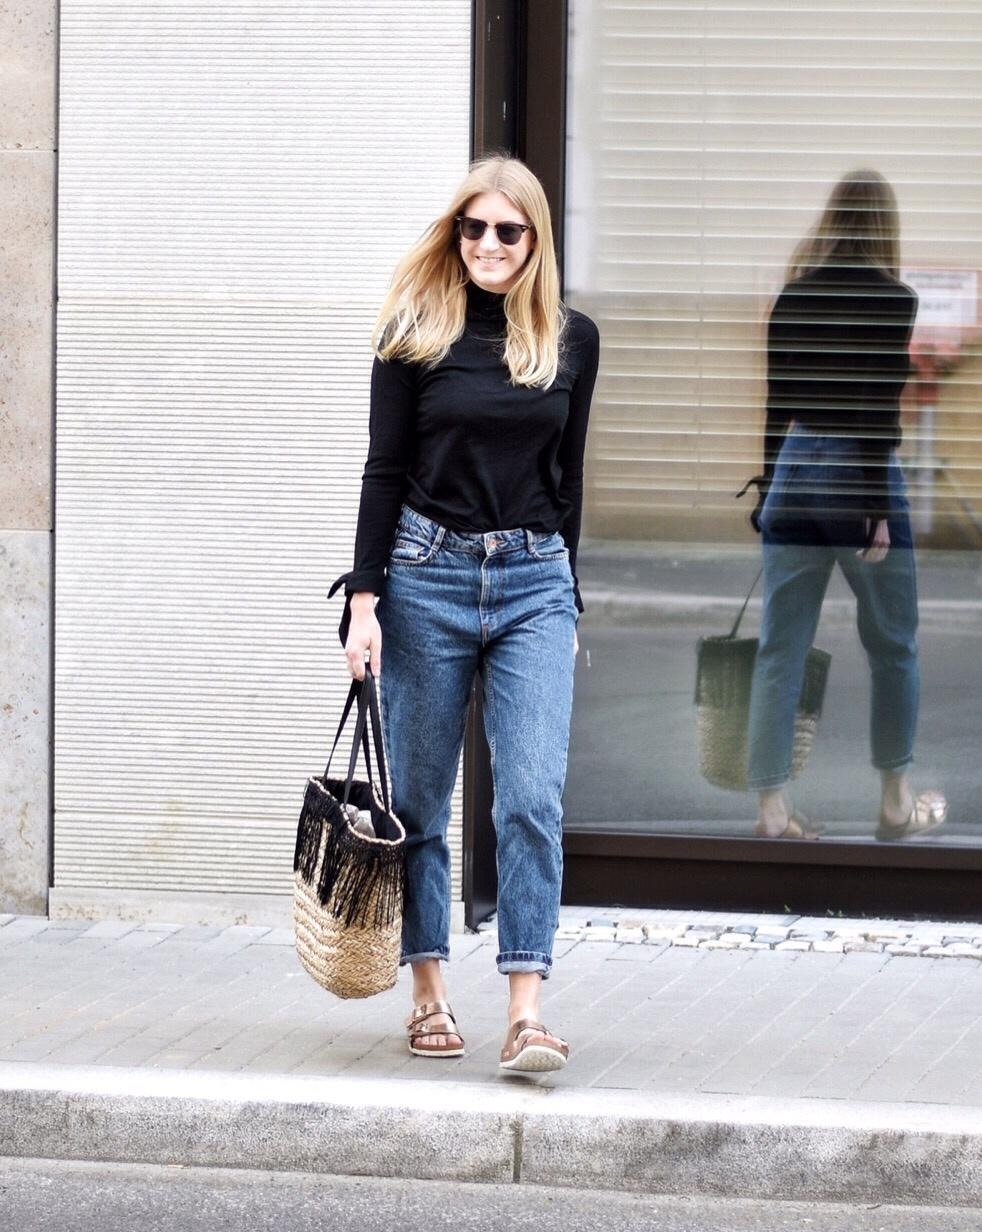 Mom-Jeans-Liebe 💙

#fashionlieblinge #jeans #weekendlook #bequemergehtsnicht